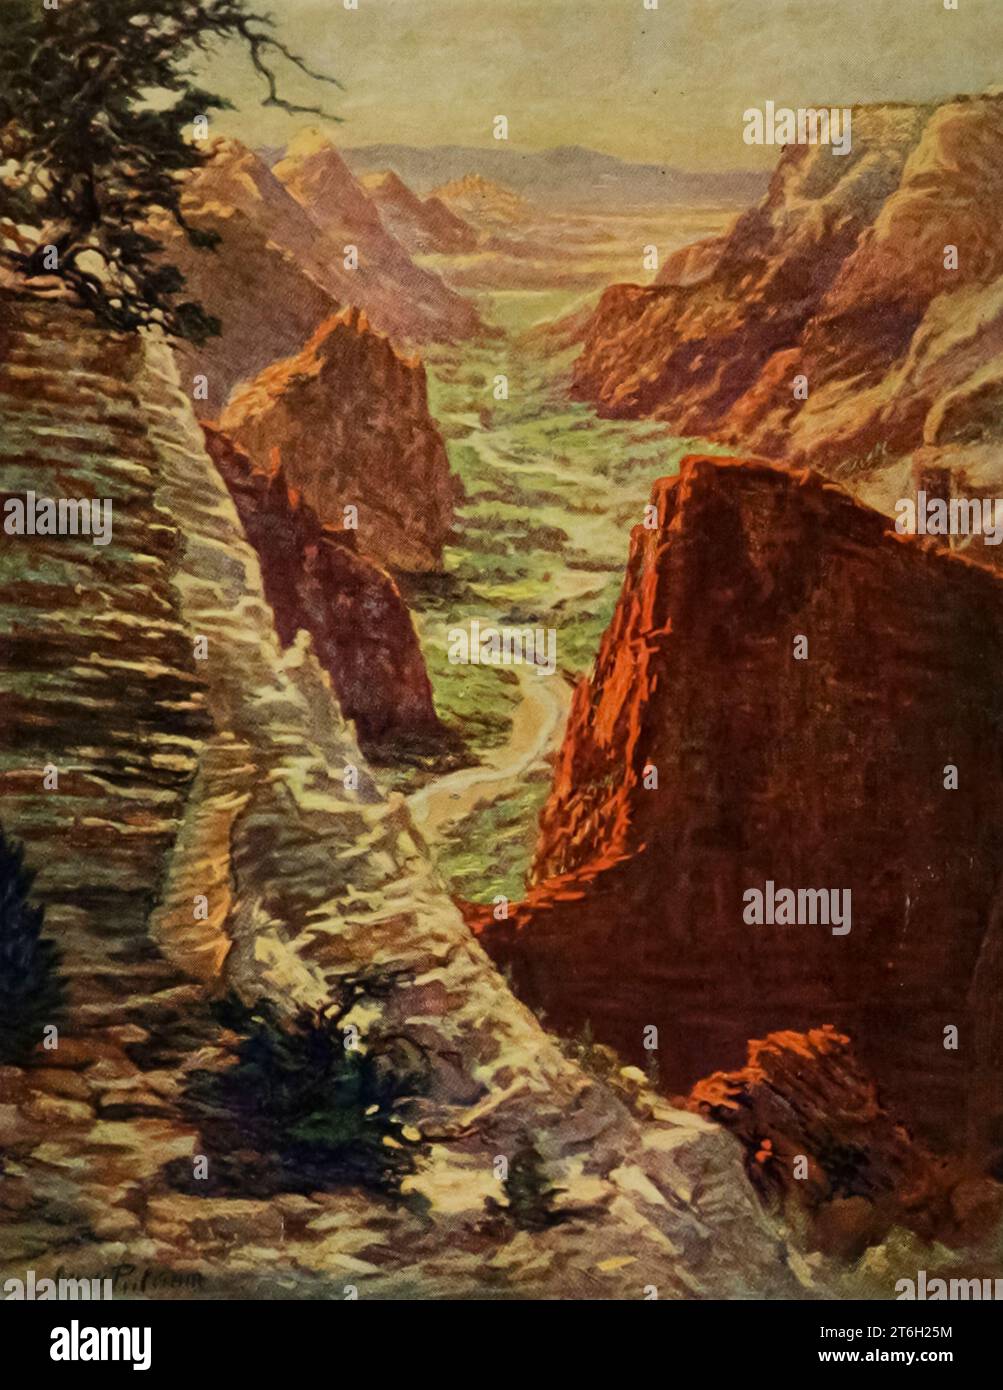 Zion Canyon panted di Orion Putnam dal libro " Utah, the Land of Blossoming Vleys " parte della serie " SEE America First " di George Wharton James pubblicato nel 1922 dalla Page Company Utah, The Land of Blossoming Vleys: la storia dei suoi rifiuti desertici, delle sue enormi e fantastiche formazioni rocciose e dei suoi fertili giardini nelle valli riparate; un'indagine sulle sue industrie in rapido sviluppo; un resoconto dell'origine, dello sviluppo e delle credenze della chiesa mormone; e capitoli sulla flora e la fauna, e sulle meraviglie panoramiche che sono un patrimonio di tutti gli americani Foto Stock